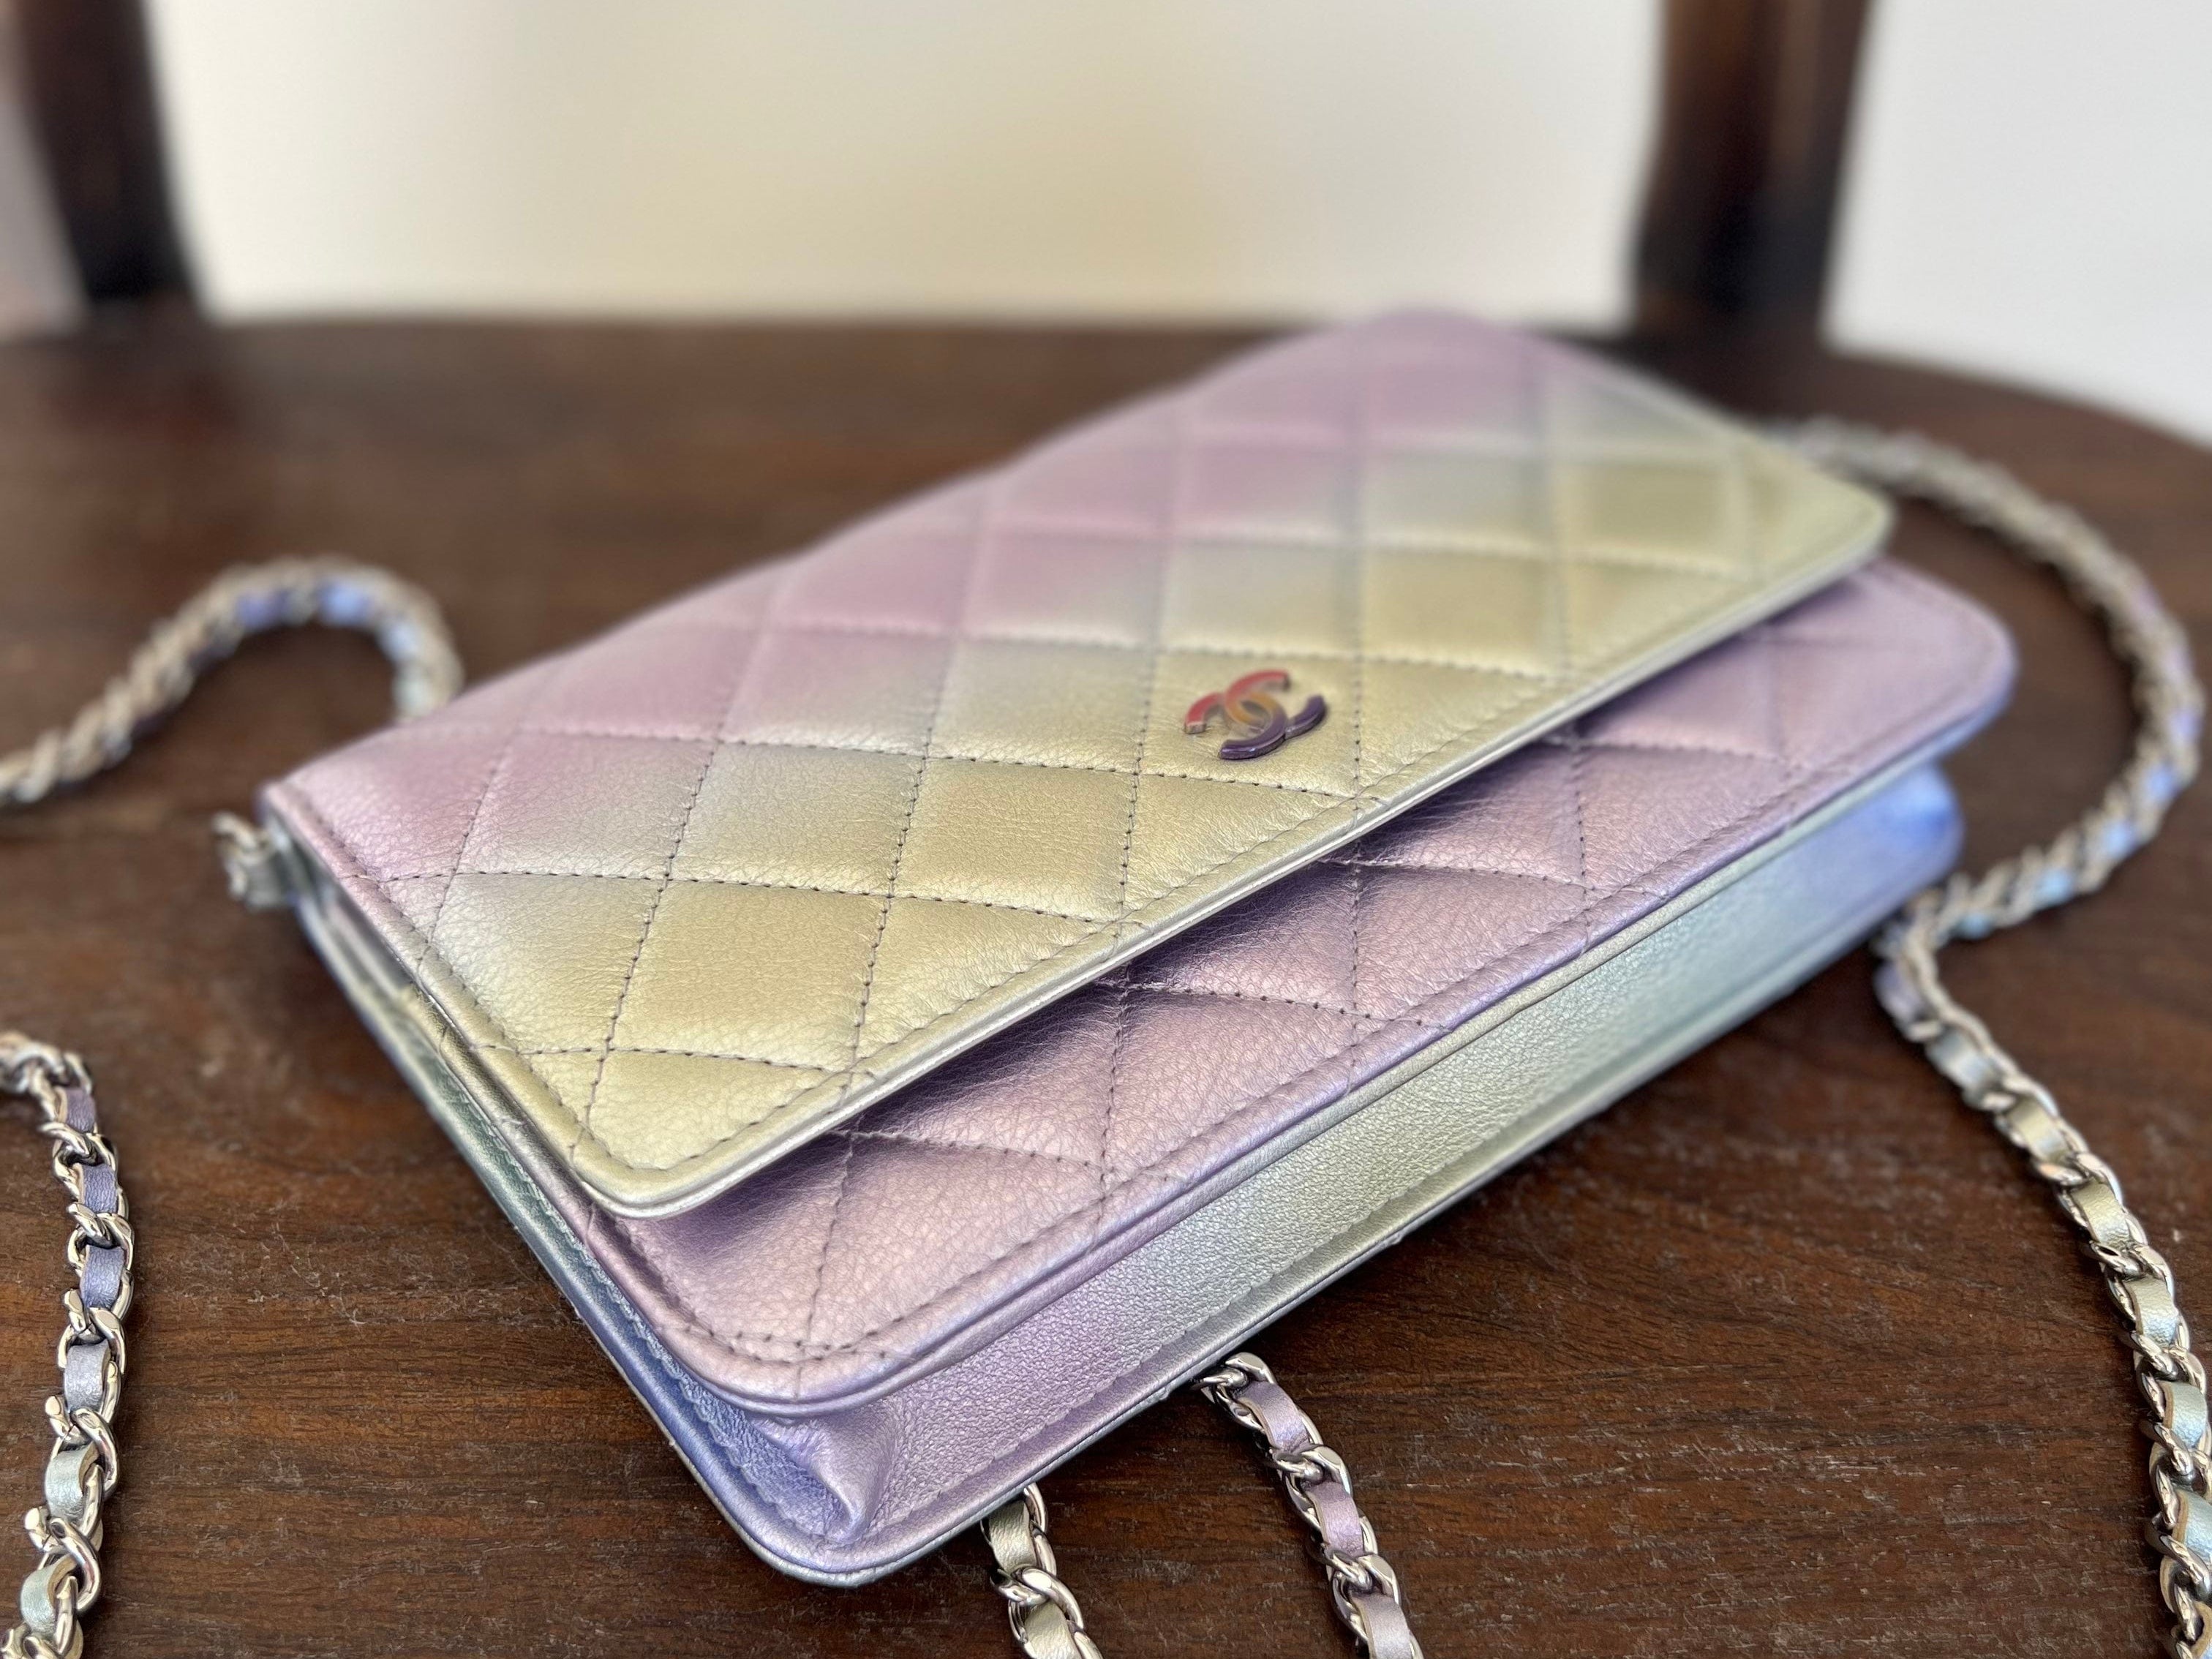 CHANEL Handbag 21K Gradient Metallic Rainbow Calfskin Quilted Wallet on Chain (WOC) - Redeluxe